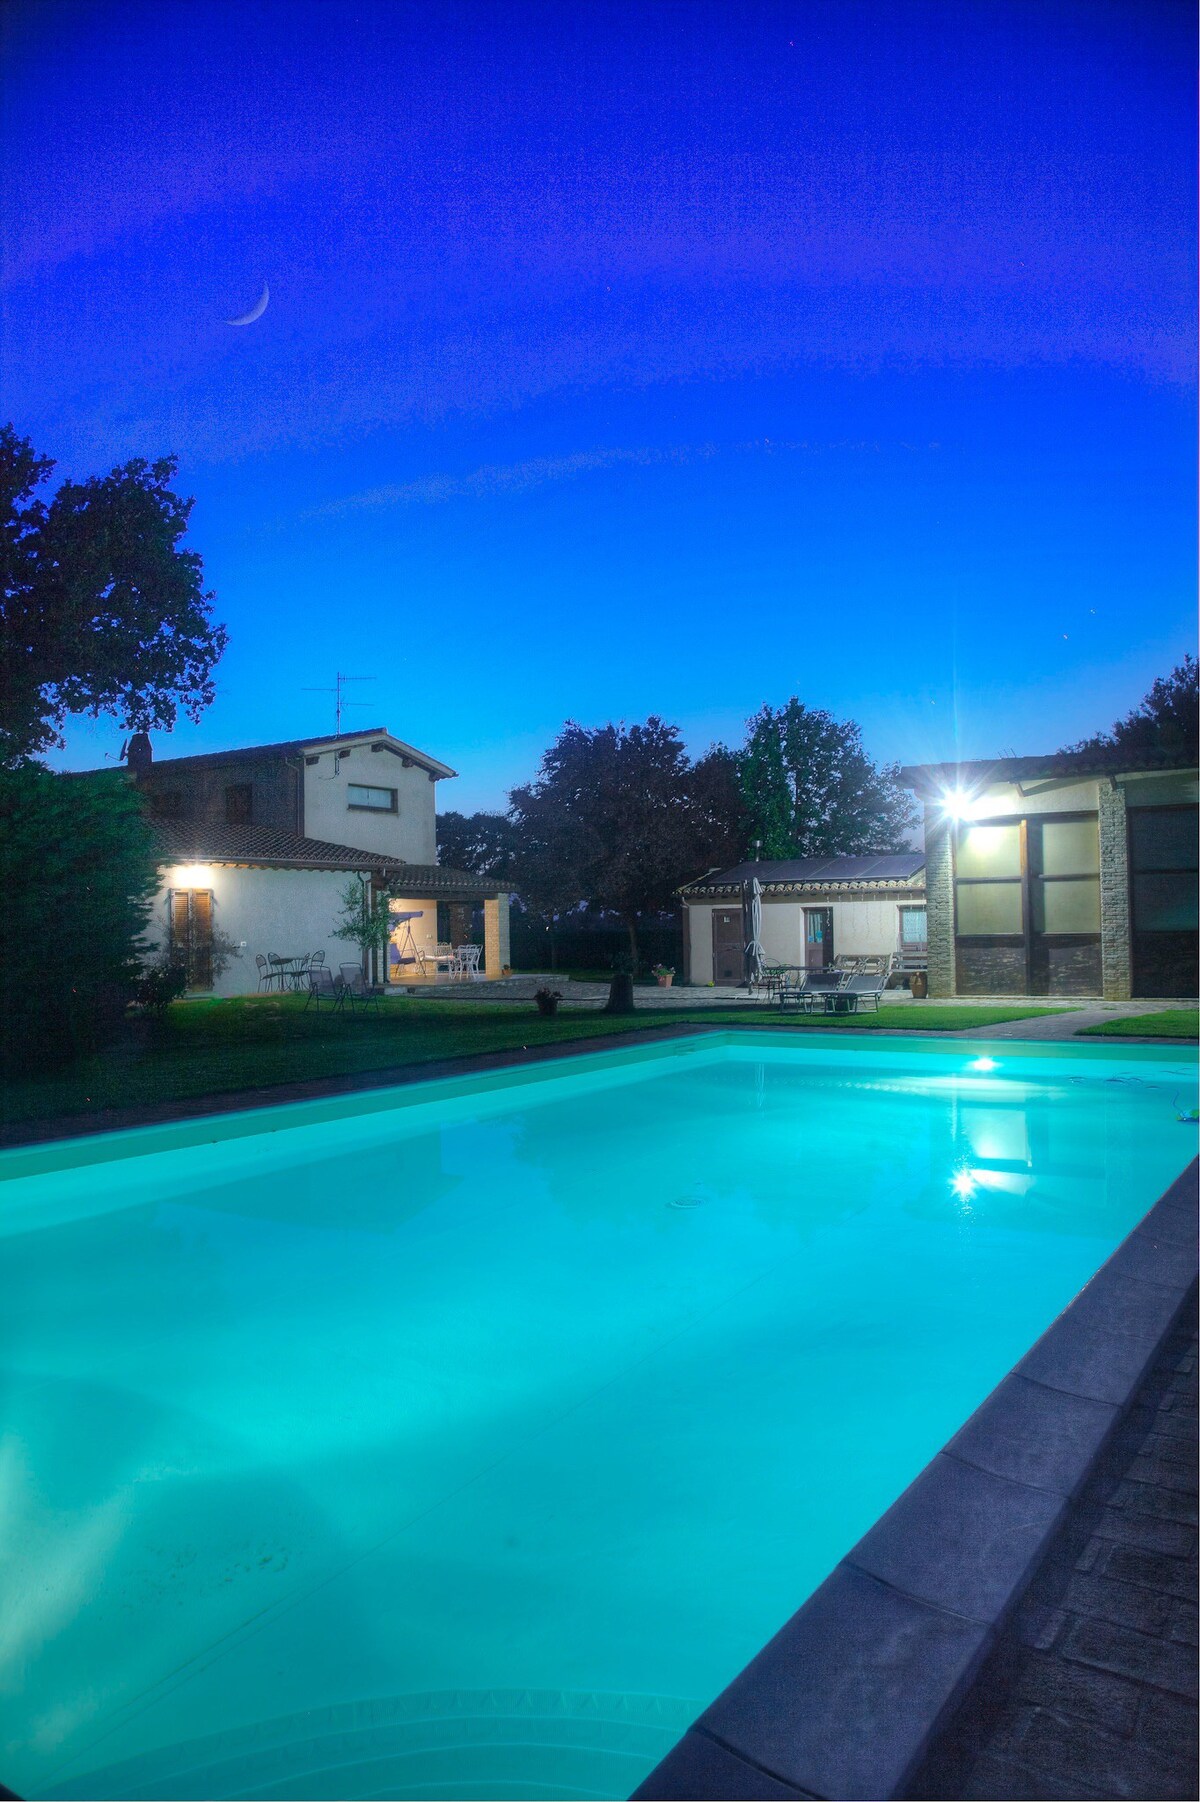 Accoglienti camere in B&B con piscina 
In Umbria